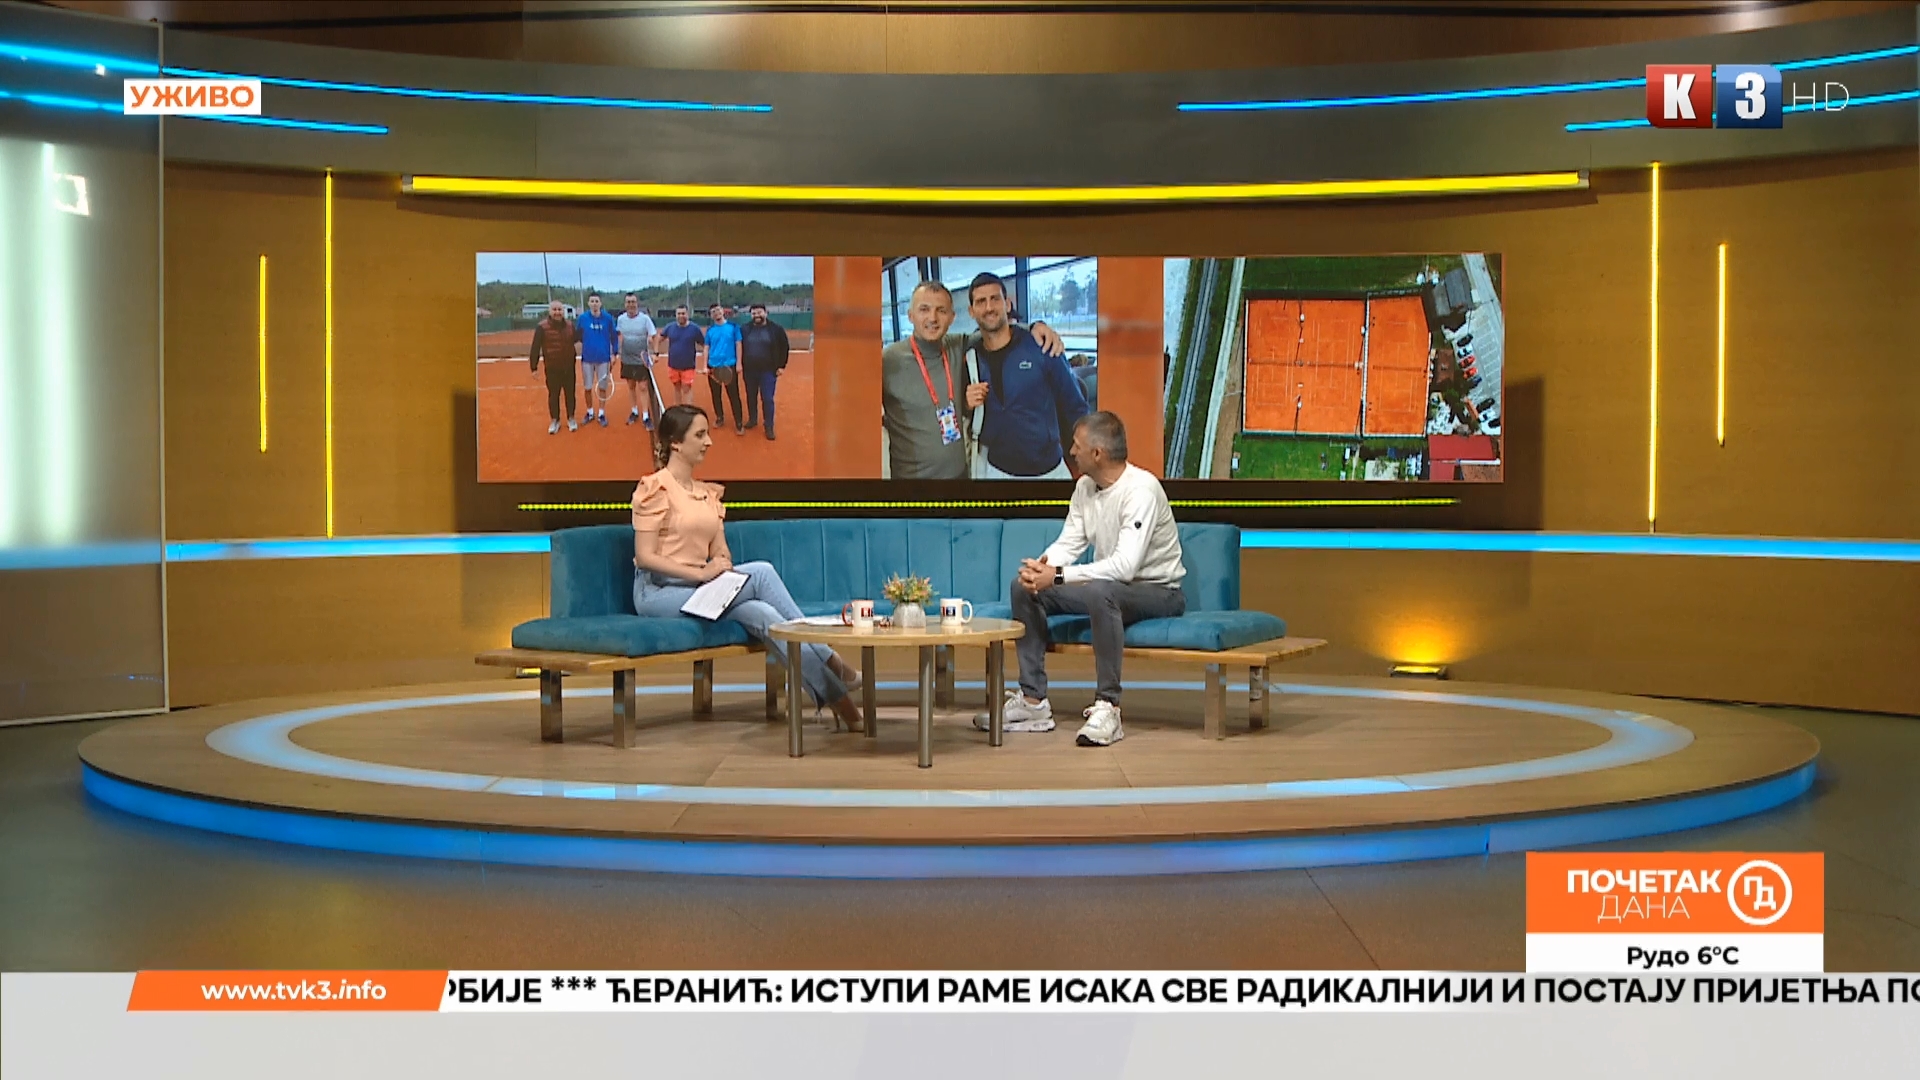 Teniski klub “Suvenir” iz Čelinca gotovo tri decenije okuplja zaljubljenike u “bijeli sport” – Početak dana TV K3 (VIDEO)